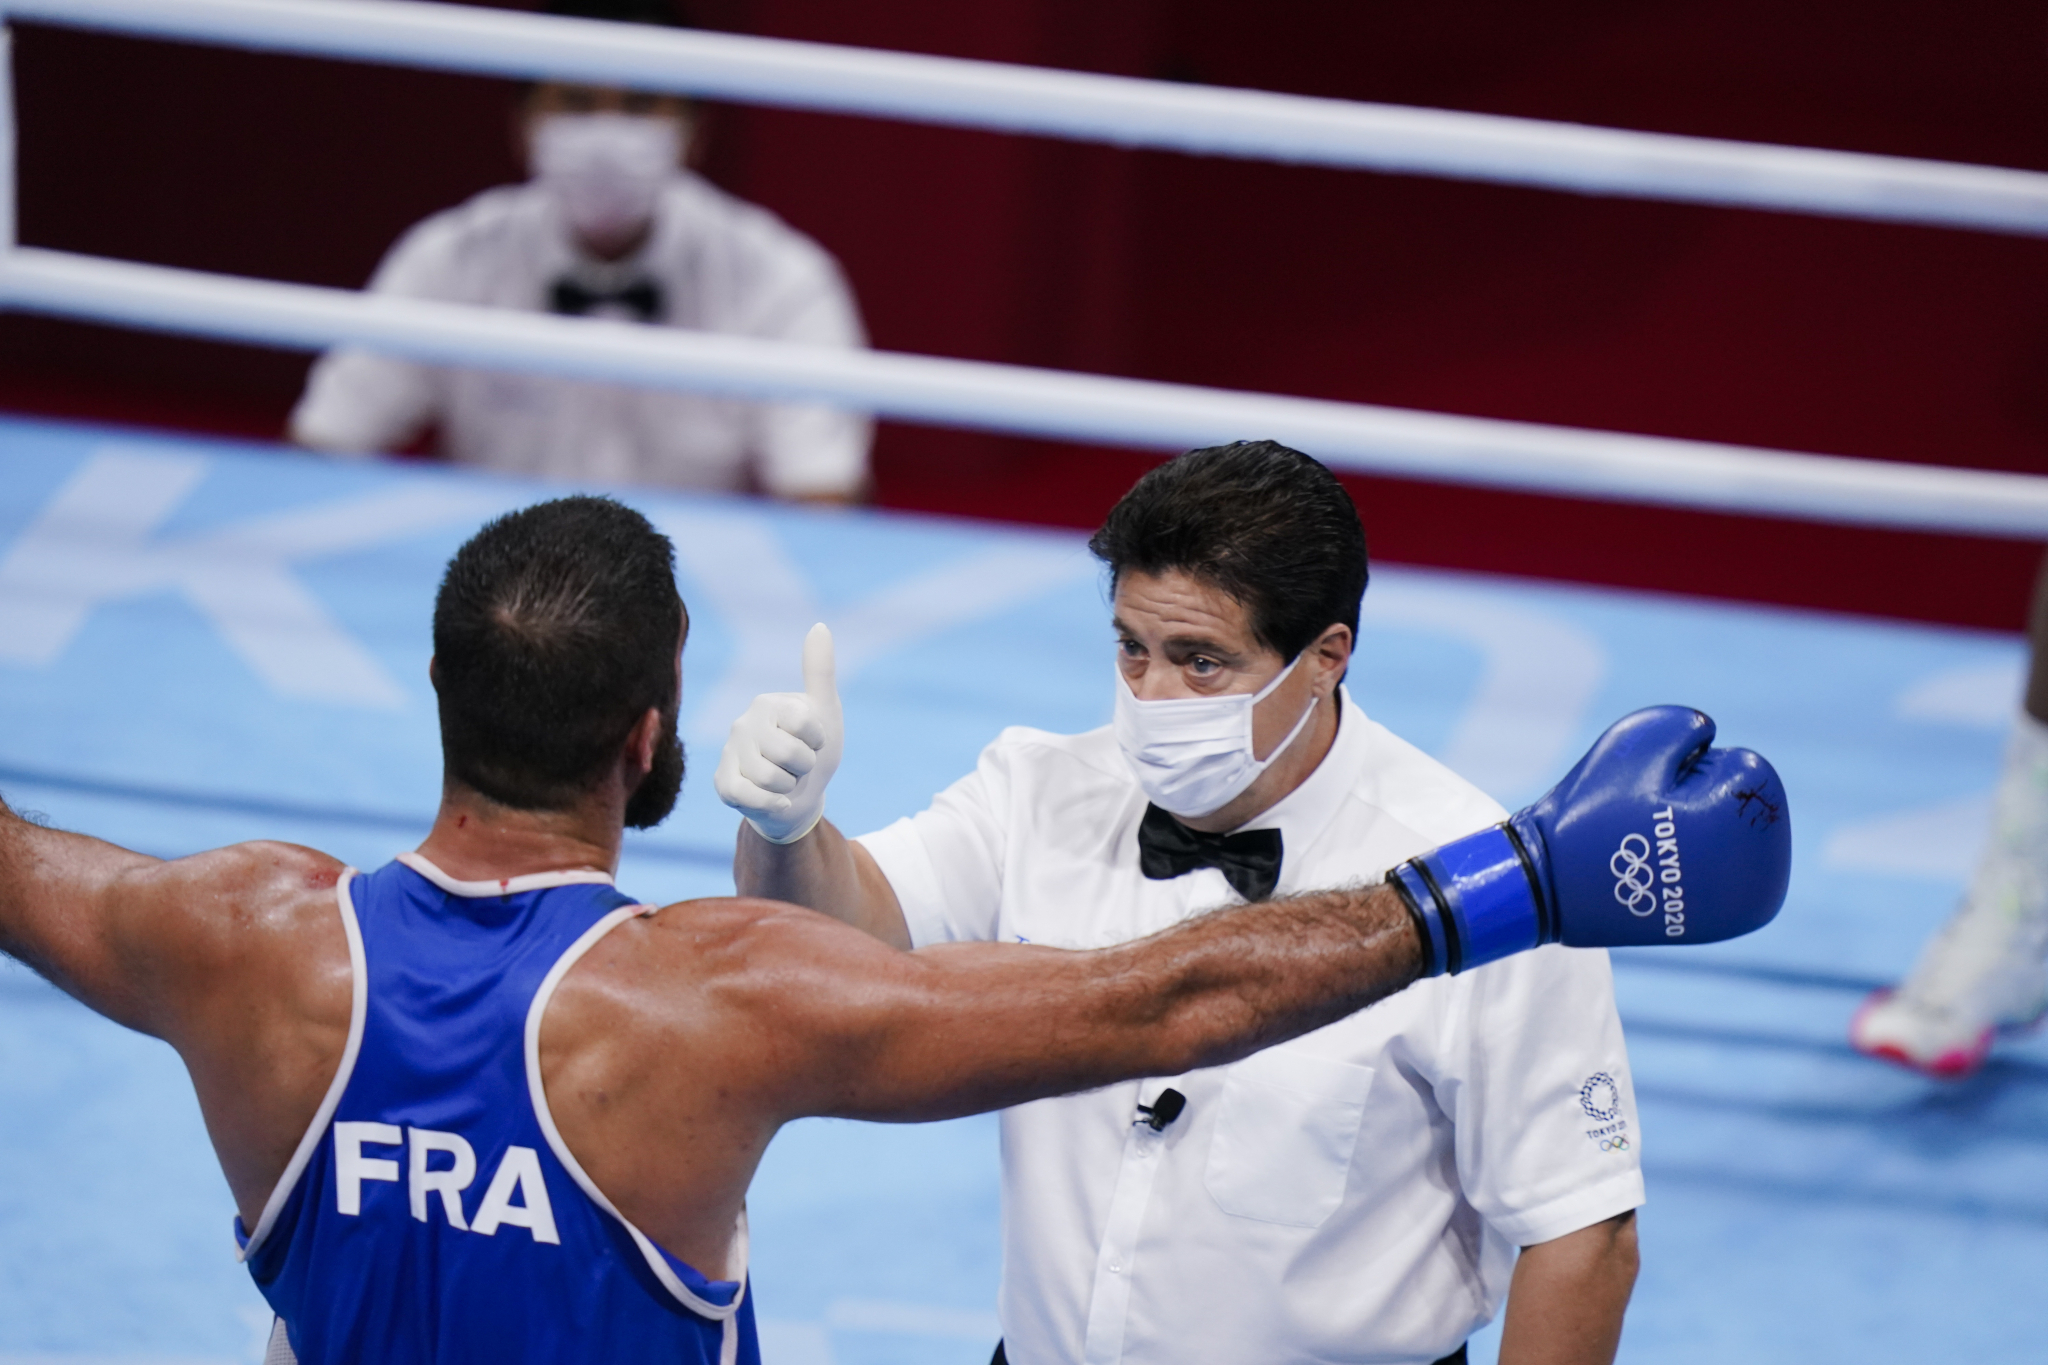 SKANDAL NA OLIMPIJSKIM IGRAMA! Francuski bokser ostao bez medalje, pa iz protesta sat vremena sedeo u ringu! (VIDEO)